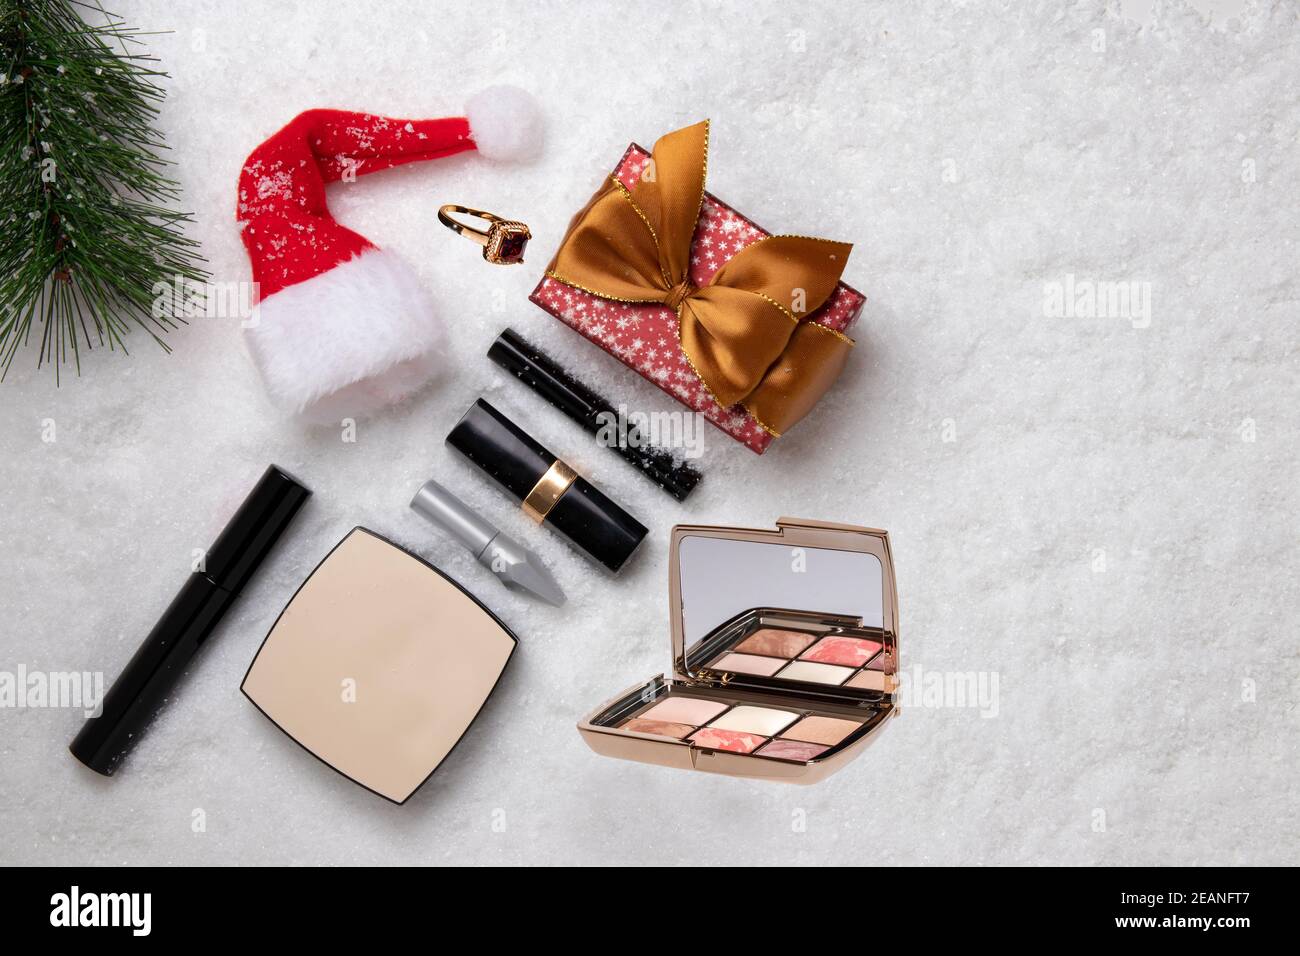 Vorlage für weihnachtsverkauf. Draufsicht auf verschiedene Kosmetikprodukte und Beauty-Accessoires, ein Geschenk, einen Weihnachtsmütze und einen Tannenzweig auf weißem Schnee. Platz für Design. Stockfoto